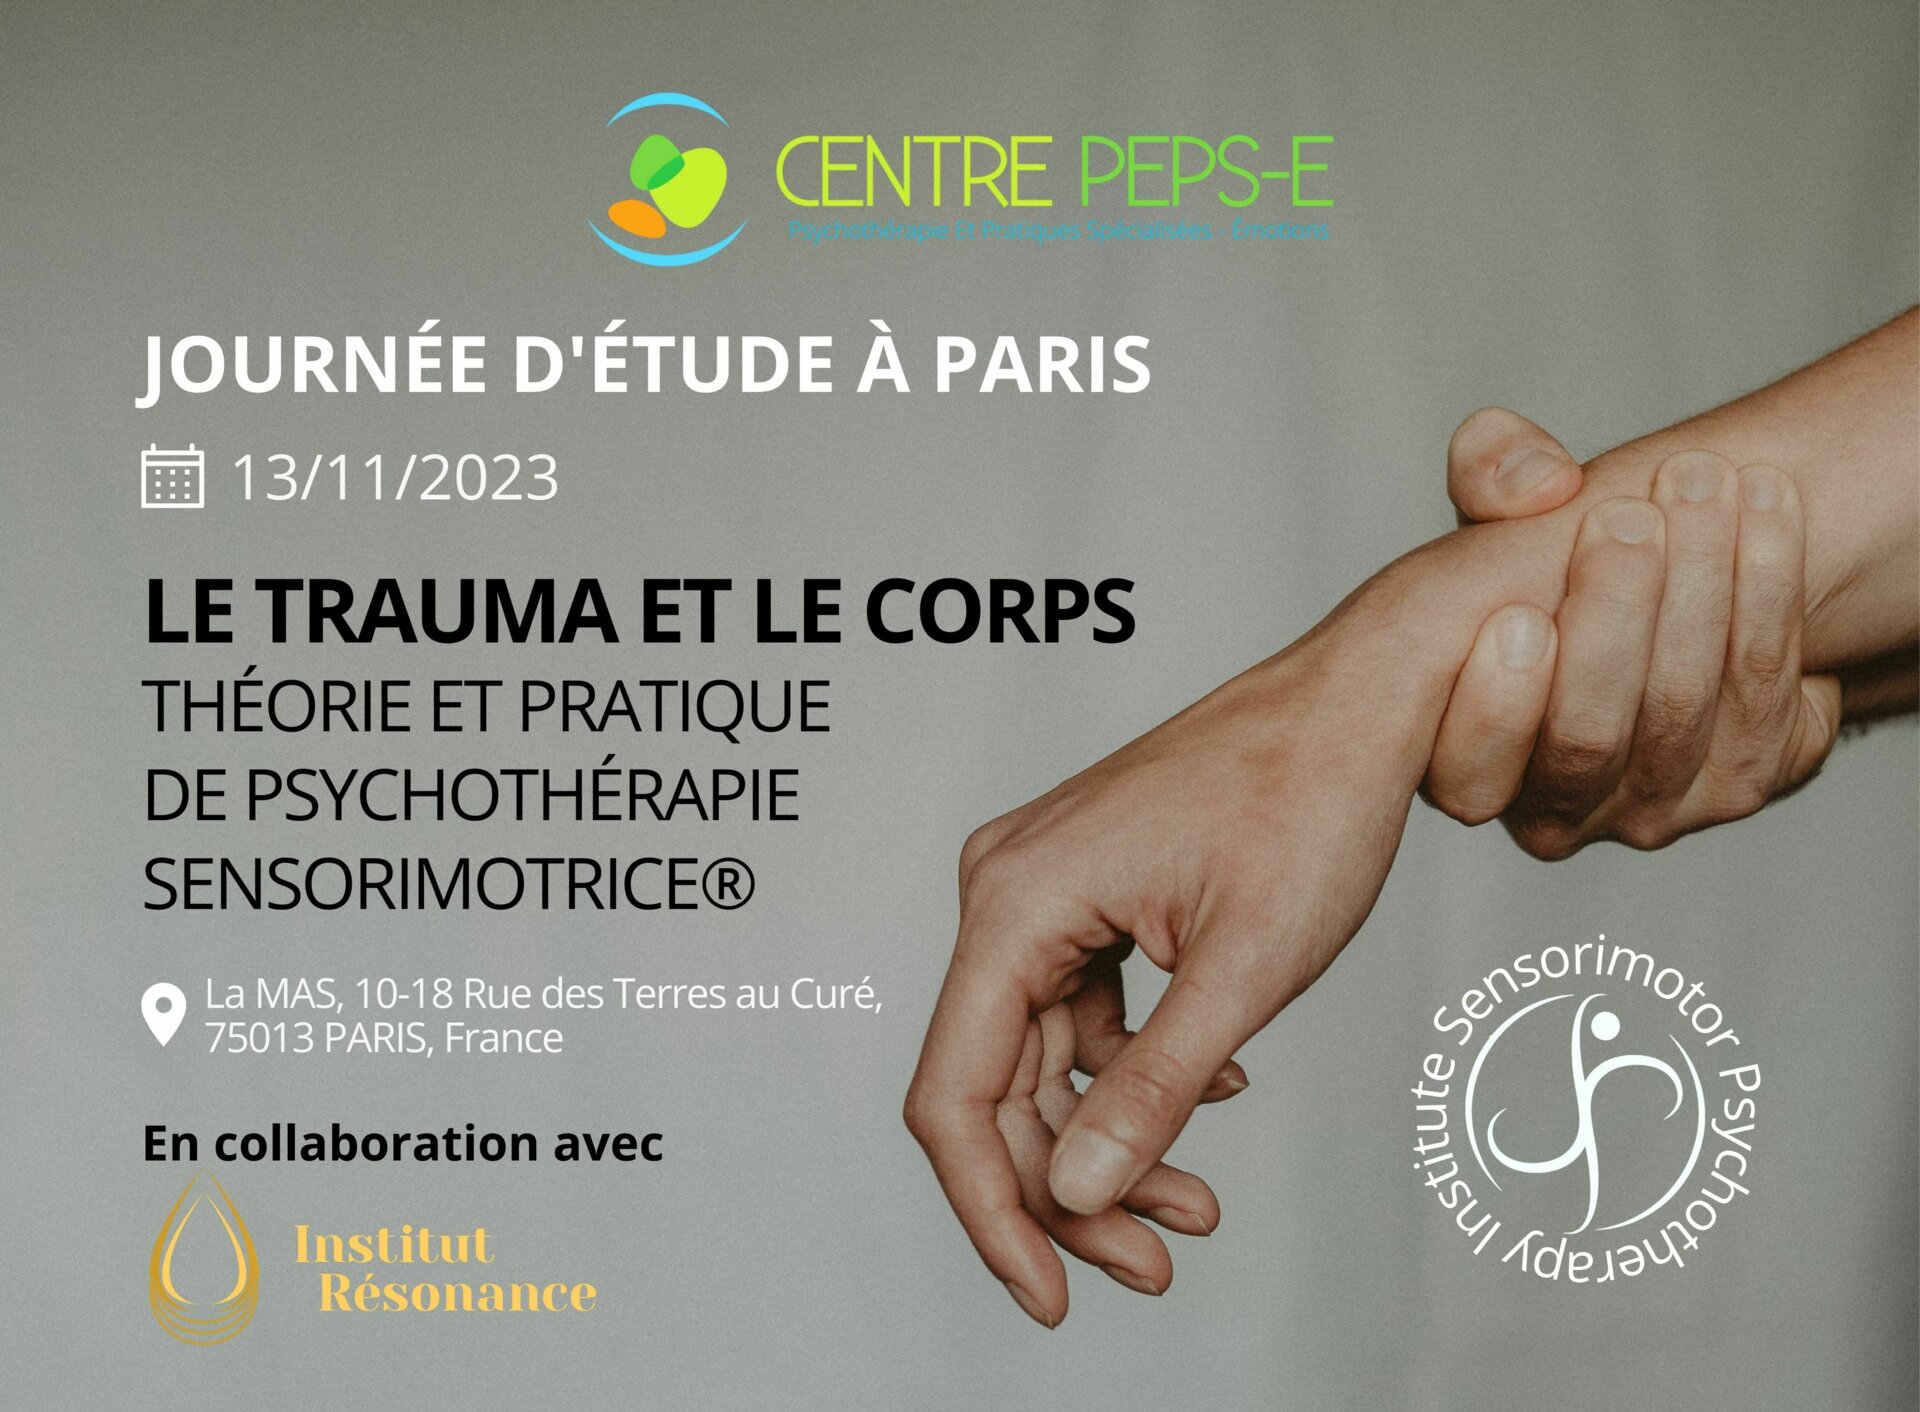 Journée d'étude (Paris) - Le trauma et le corps : introduction théorique et pratique à la Psychothérapie Sensorimotrice®